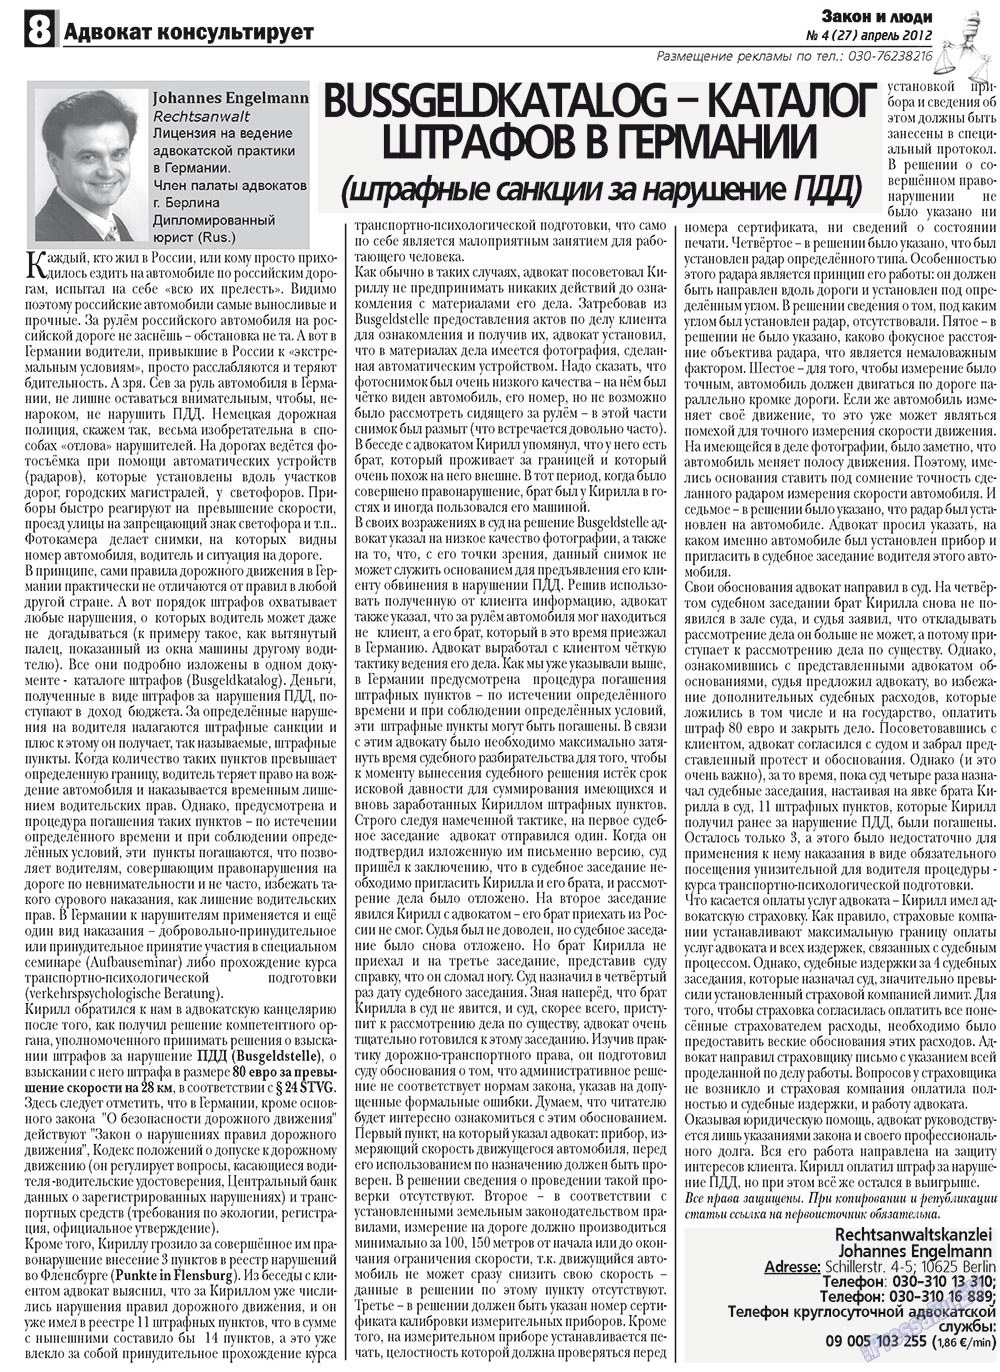 Закон и люди, газета. 2012 №4 стр.8